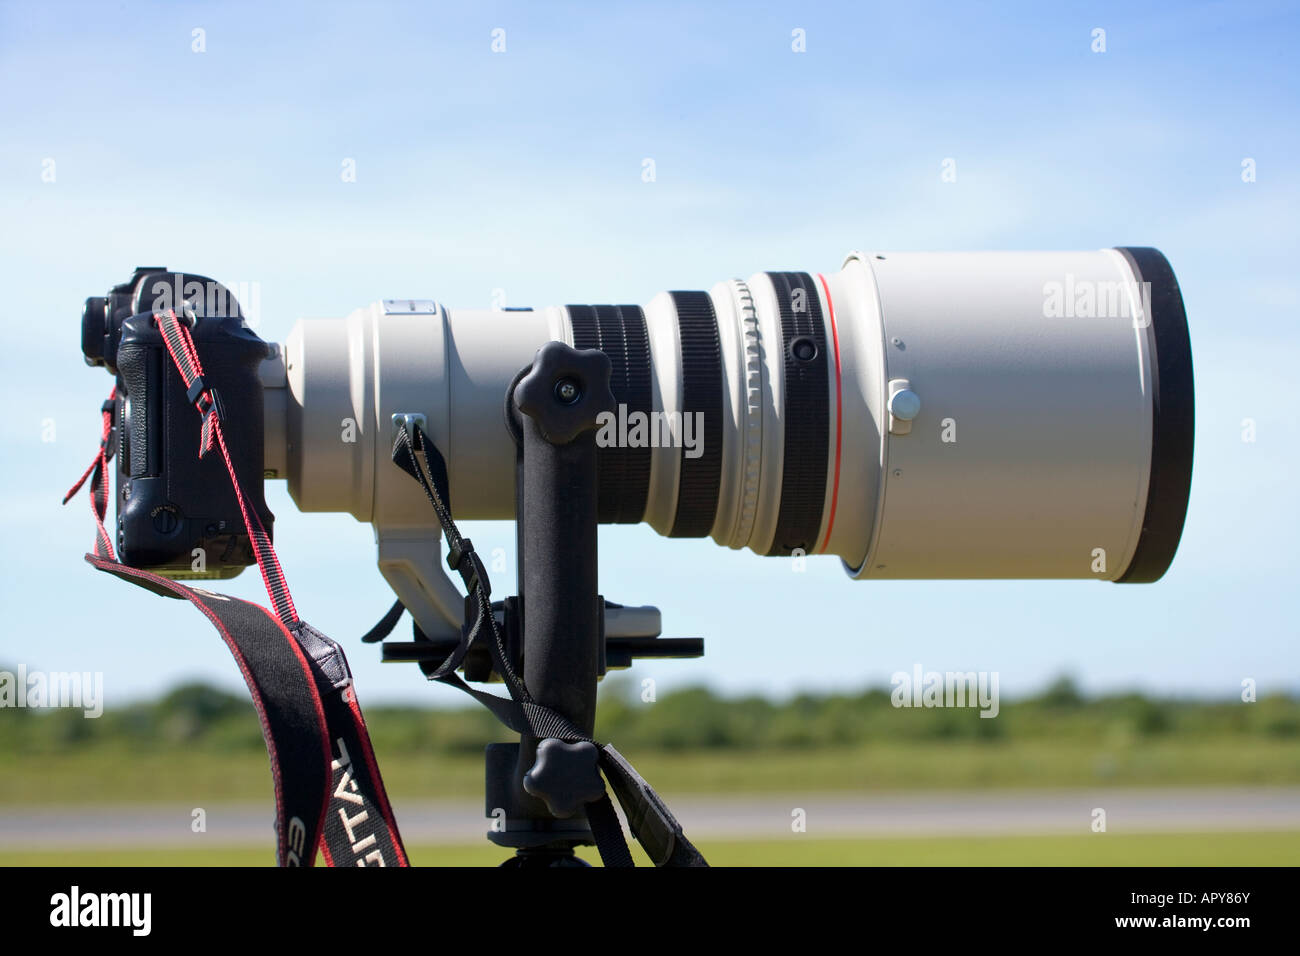 Objetivos Canon serie L con montura EF de 300 mm f/2.8 L IS (izquierda) y  400 mm f/2.8 L IS III (derecha Fotografía de stock - Alamy